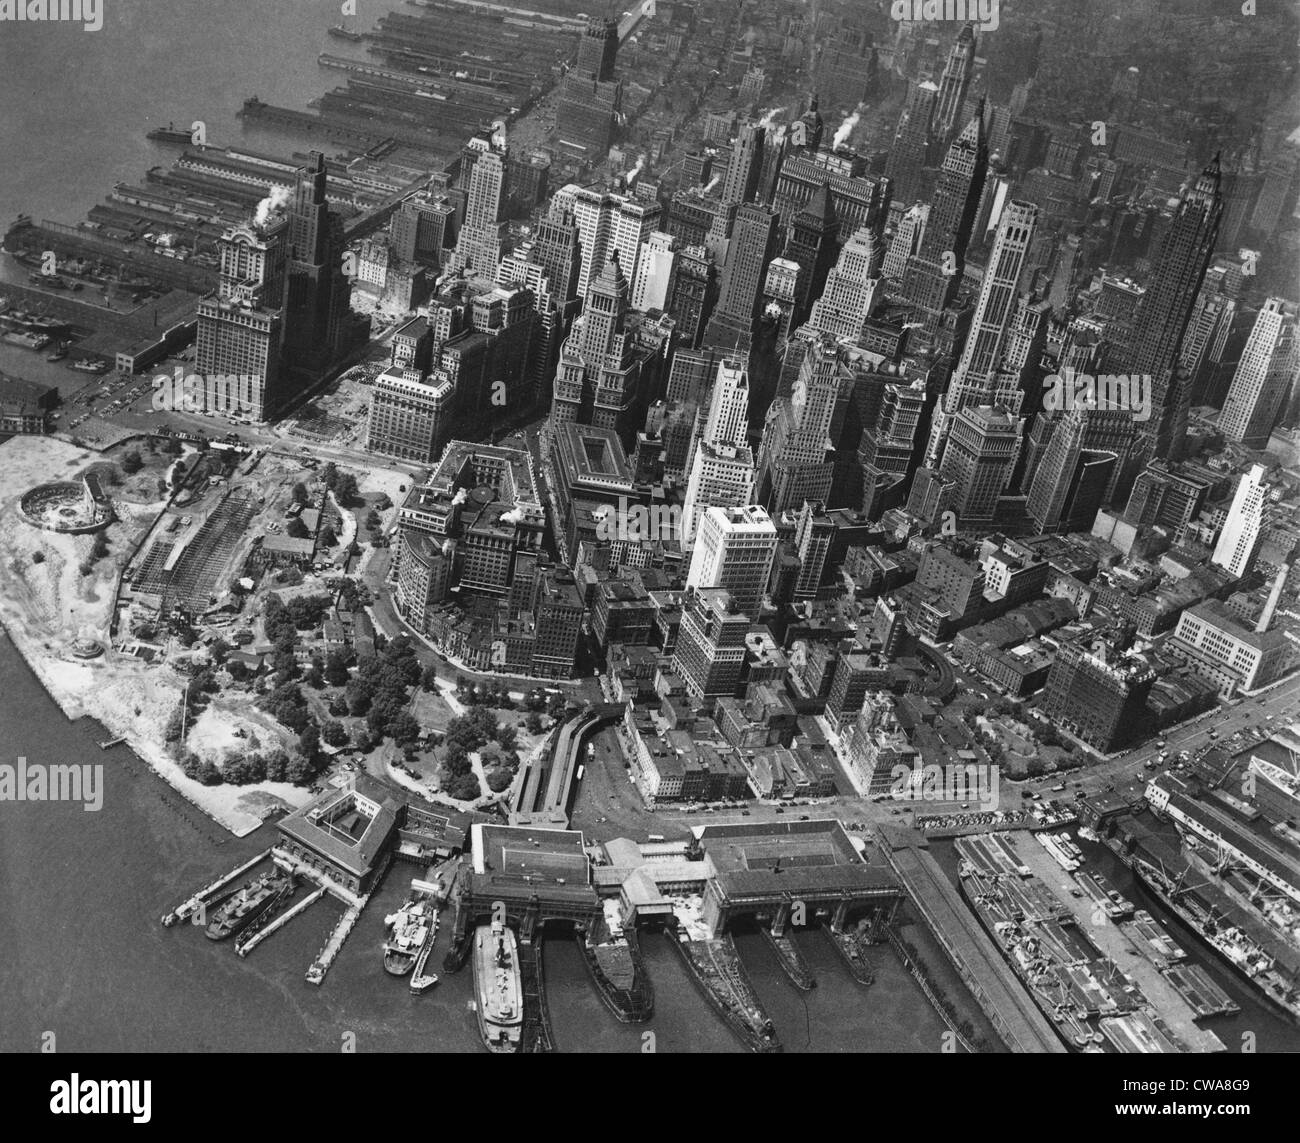 La città di New York, vista del quartiere finanziario nel centro cittadino di Manhattan, presi da un blimp battenti a 1500 ft.sopra la città, Foto Stock